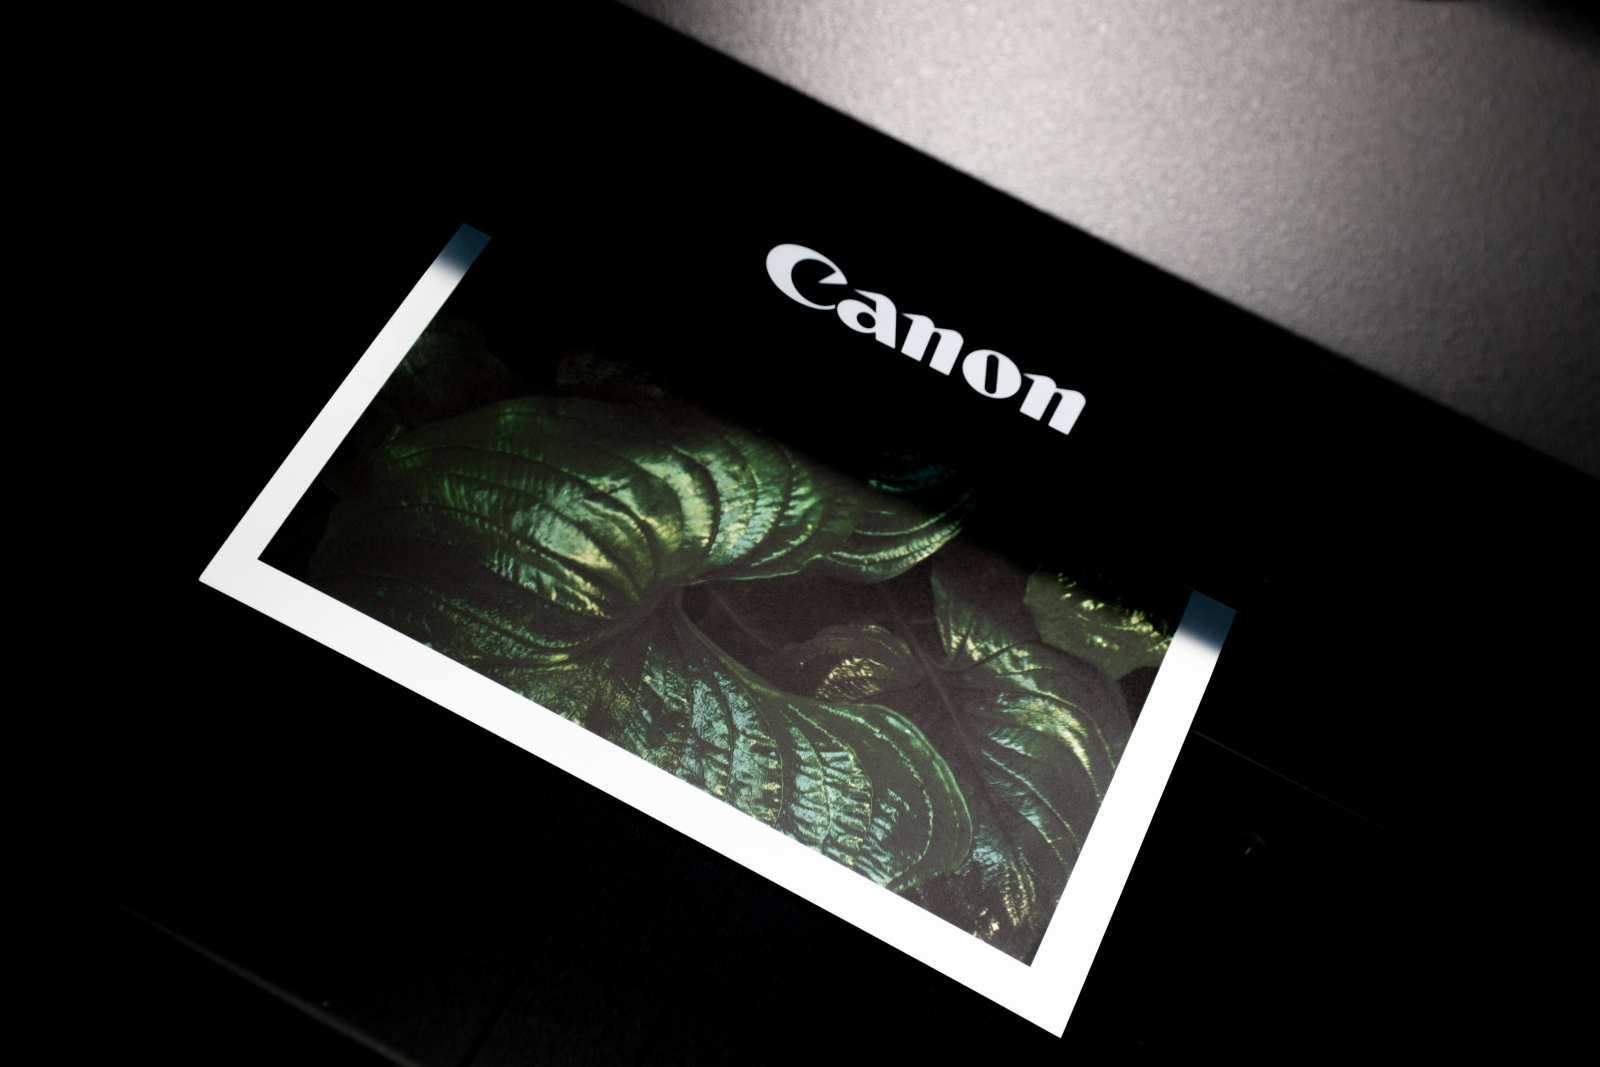 Druck eines Bildes auf einem Canon Drucker